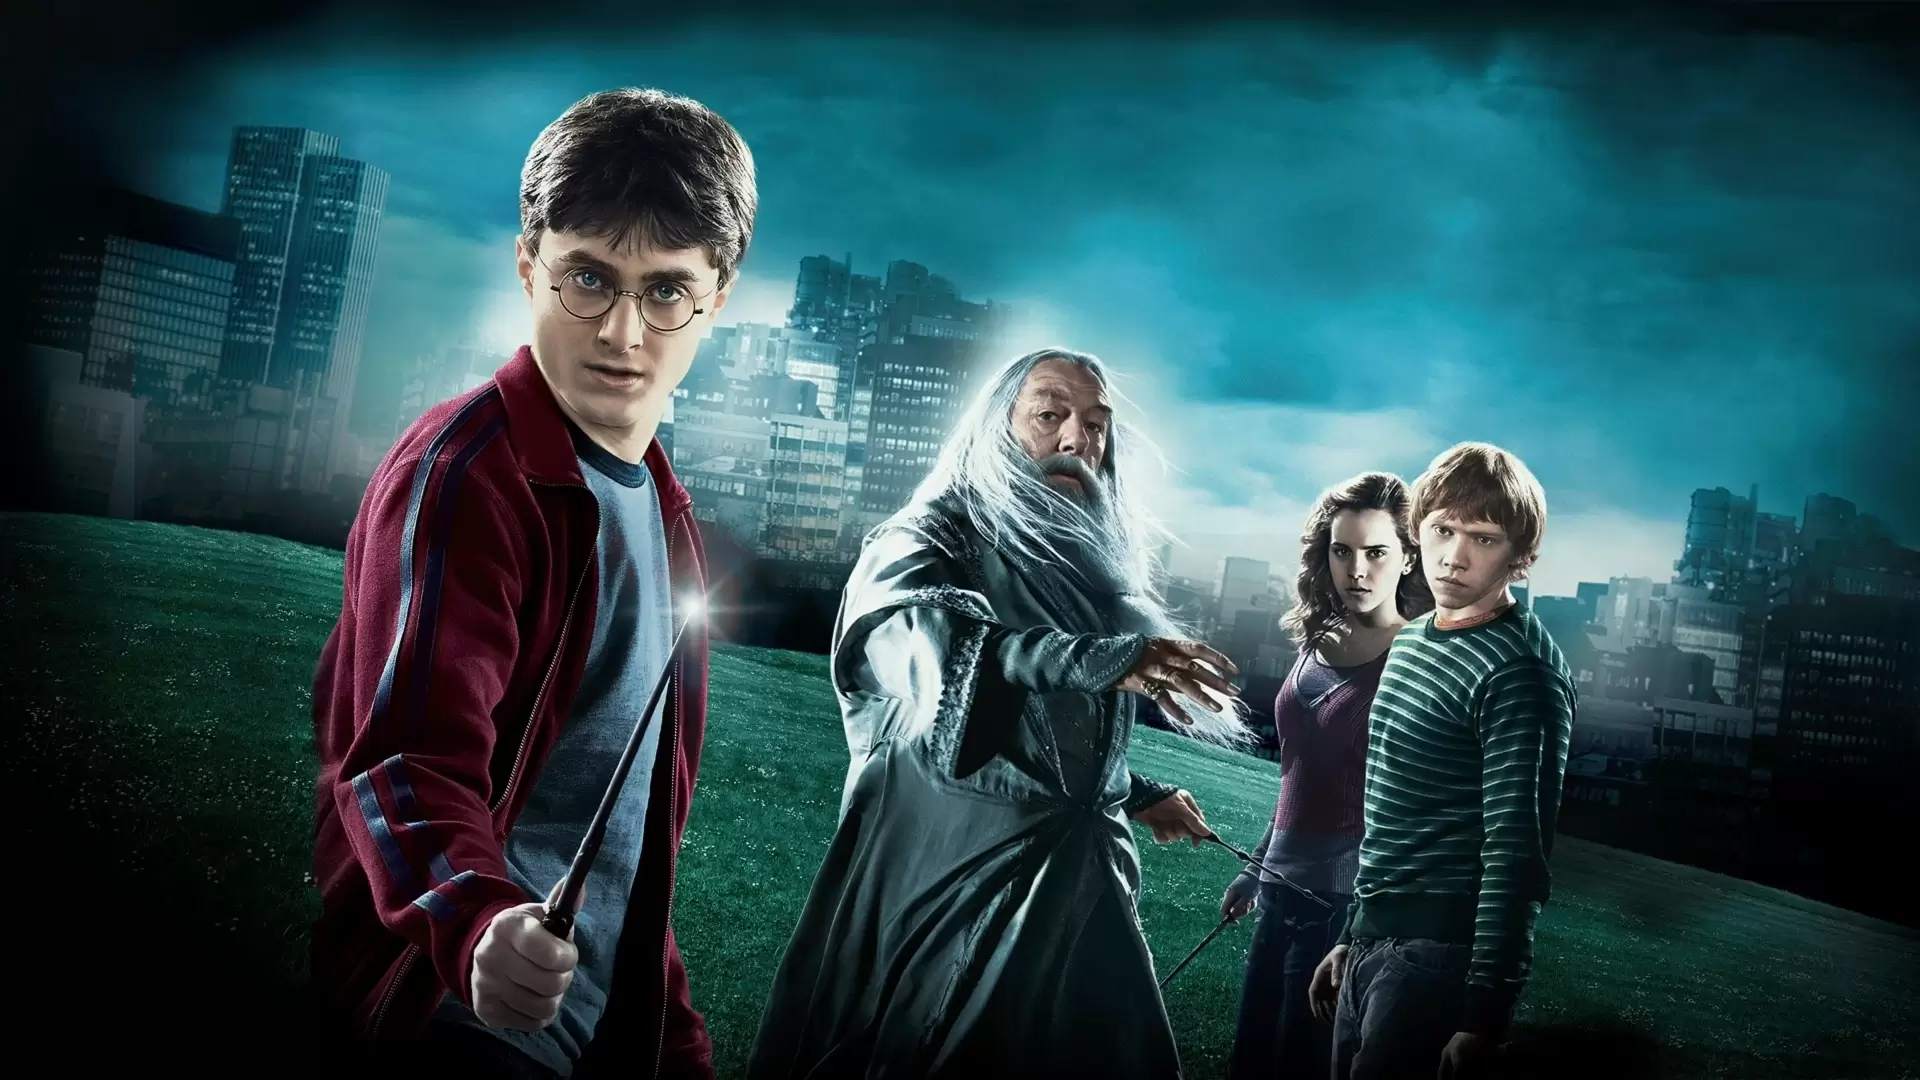 دانلود فیلم Harry Potter and the Half-Blood Prince 2009 (هری پاتر و شاهزاده دورگه) با زیرنویس فارسی و تماشای آنلاین